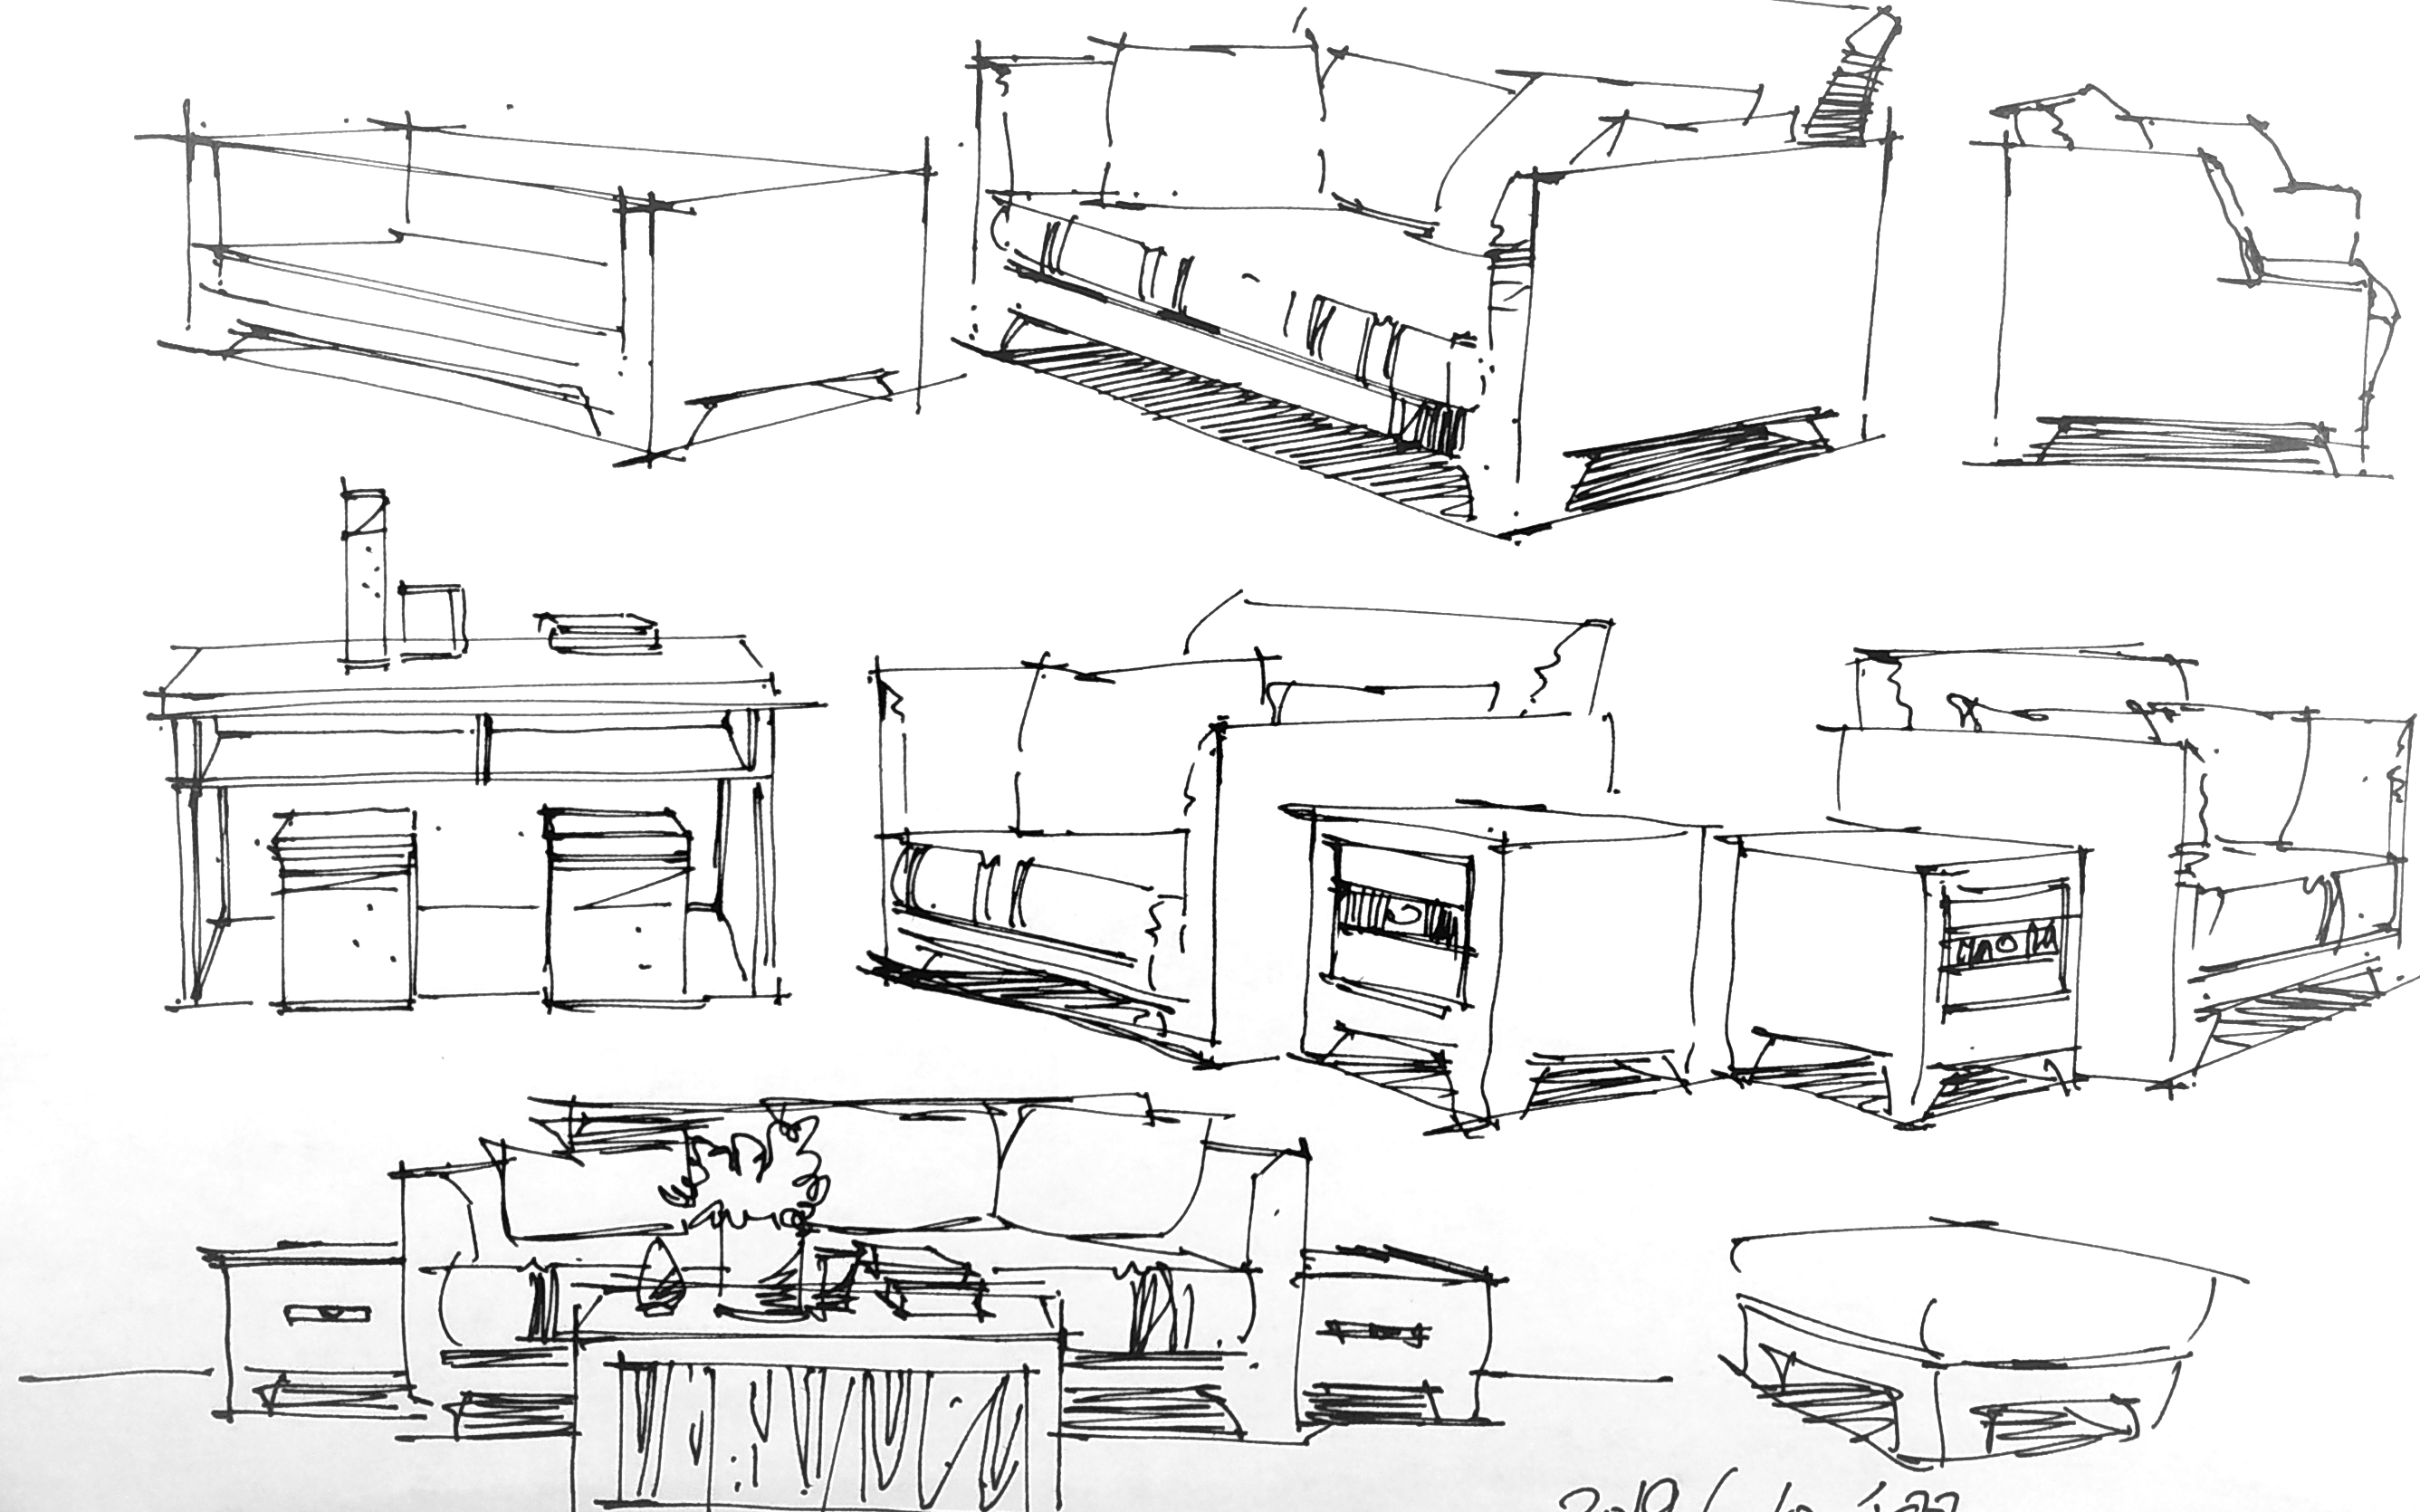 20190610_105412家具组合单体室内手绘效果图绘制单体家具小品创意